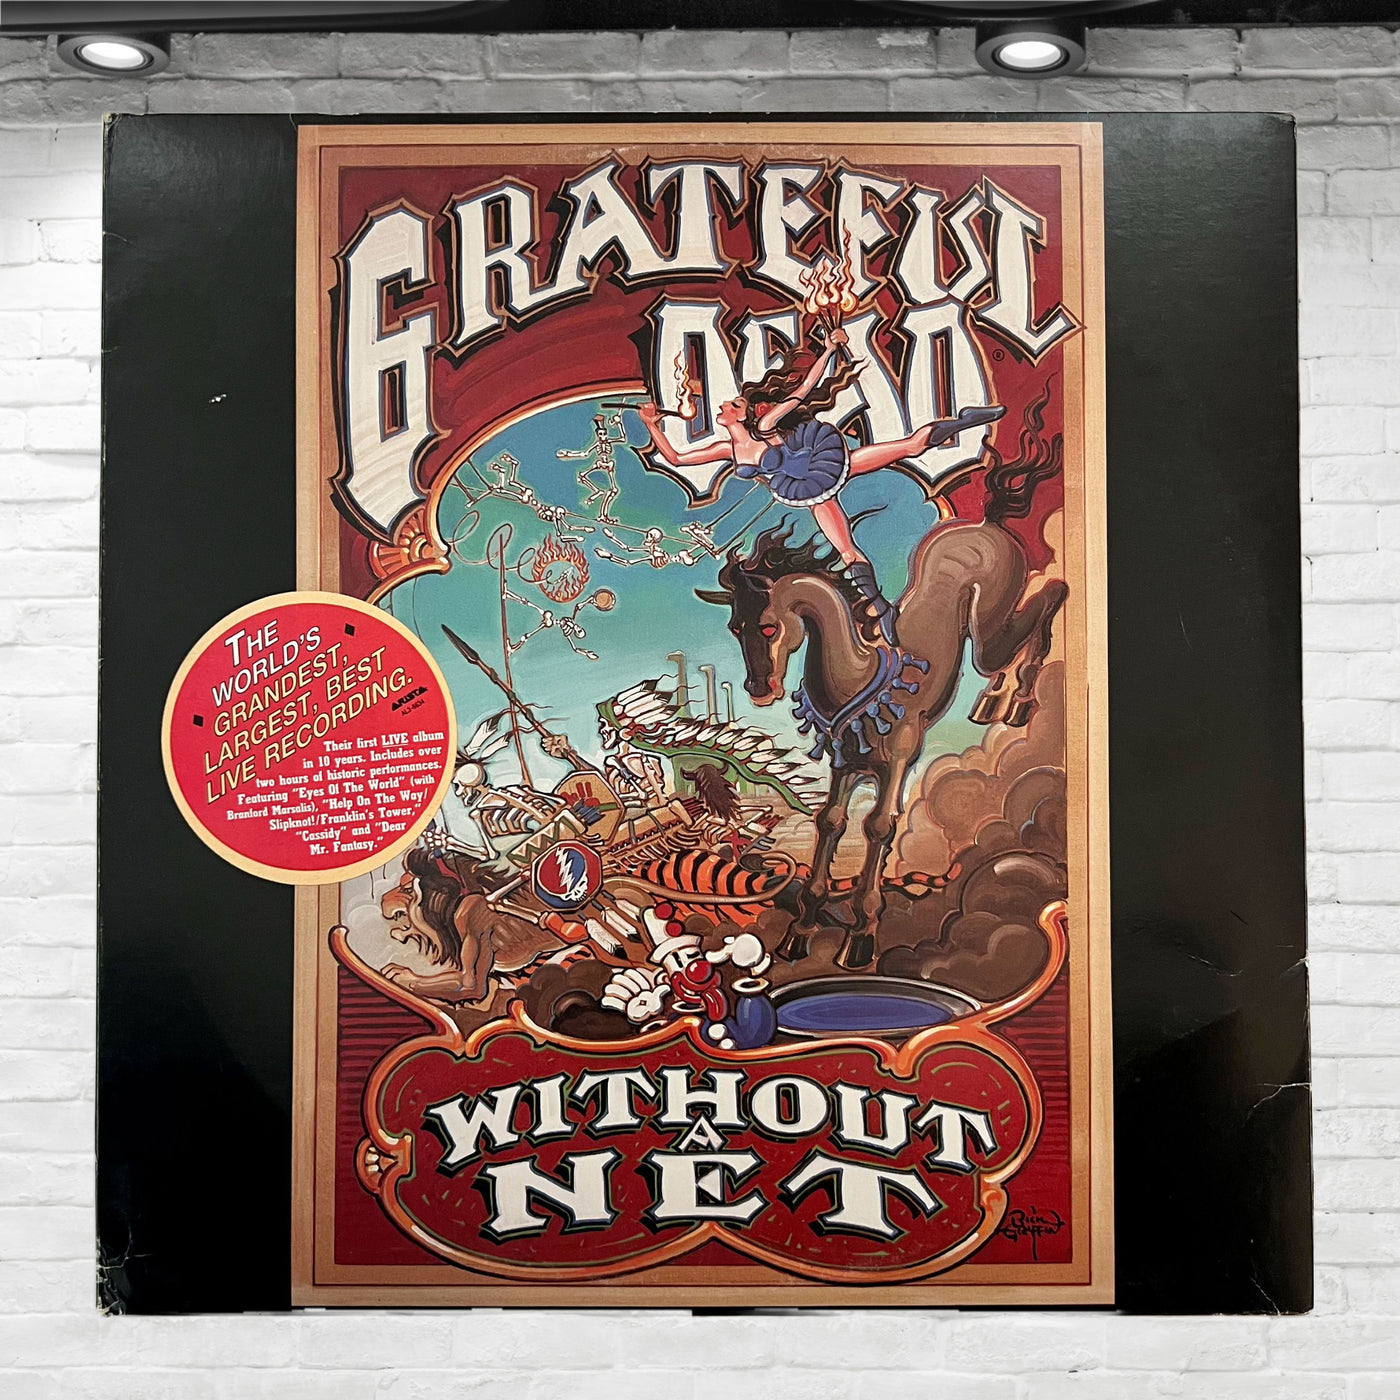 Vintage Original 1990 Grateful Dead Without A Net Vinyl Album 3 LP. Promo Stamp.